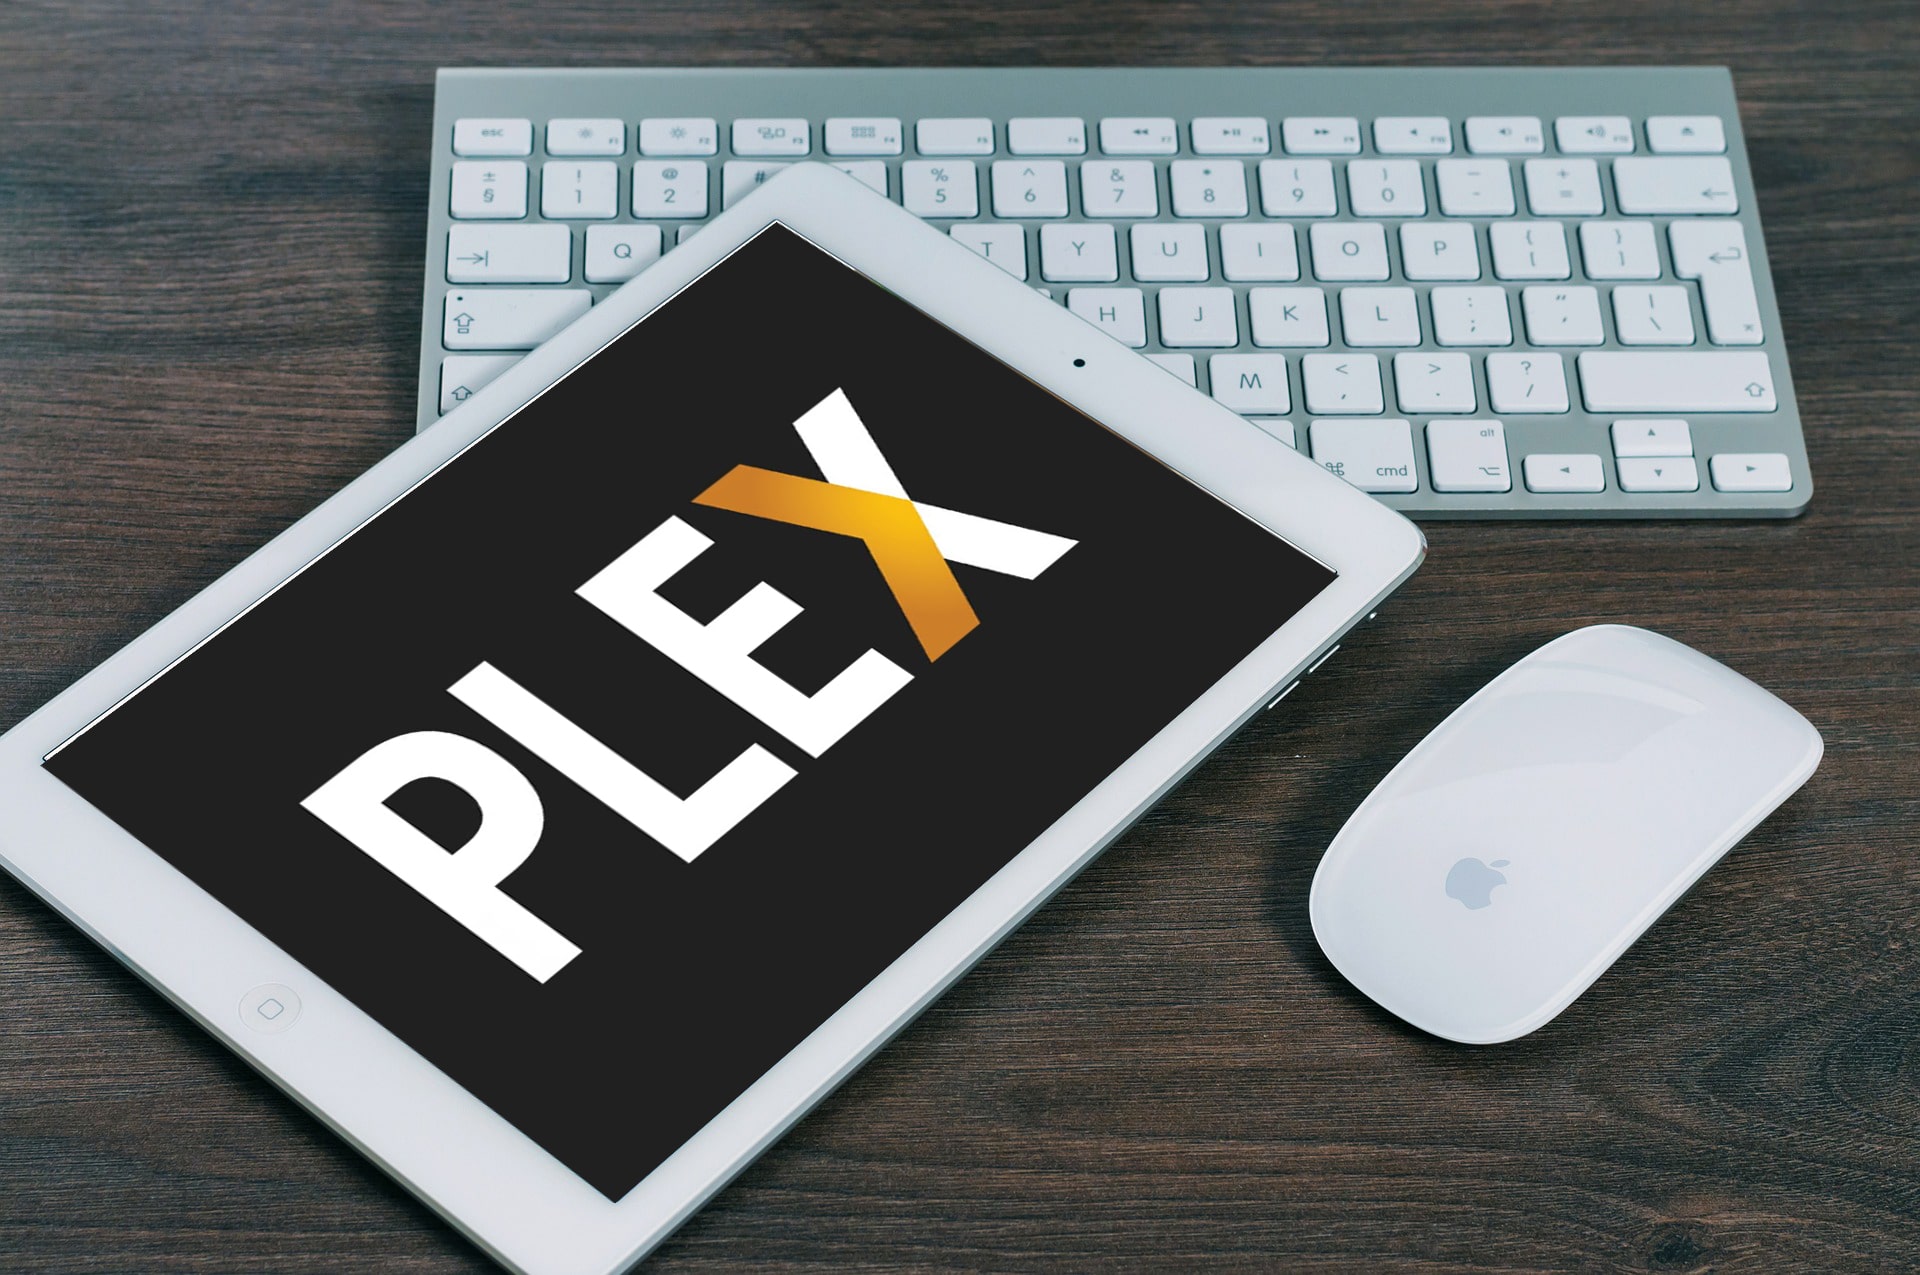 plex online